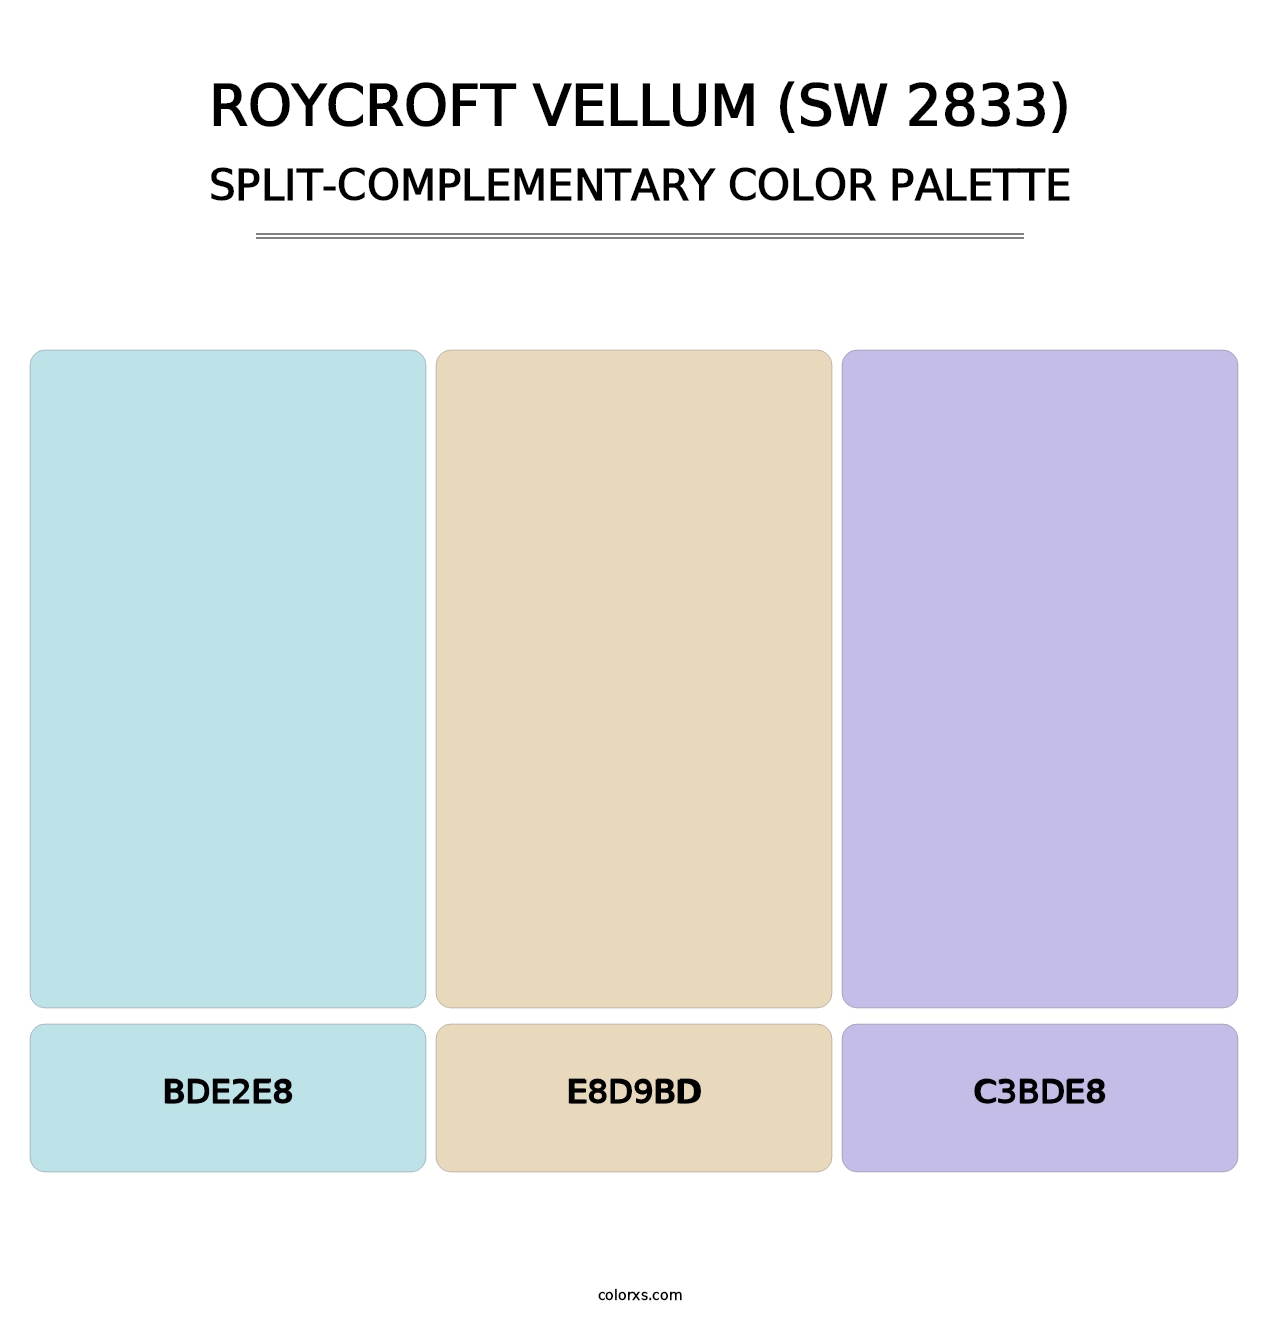 Roycroft Vellum (SW 2833) - Split-Complementary Color Palette